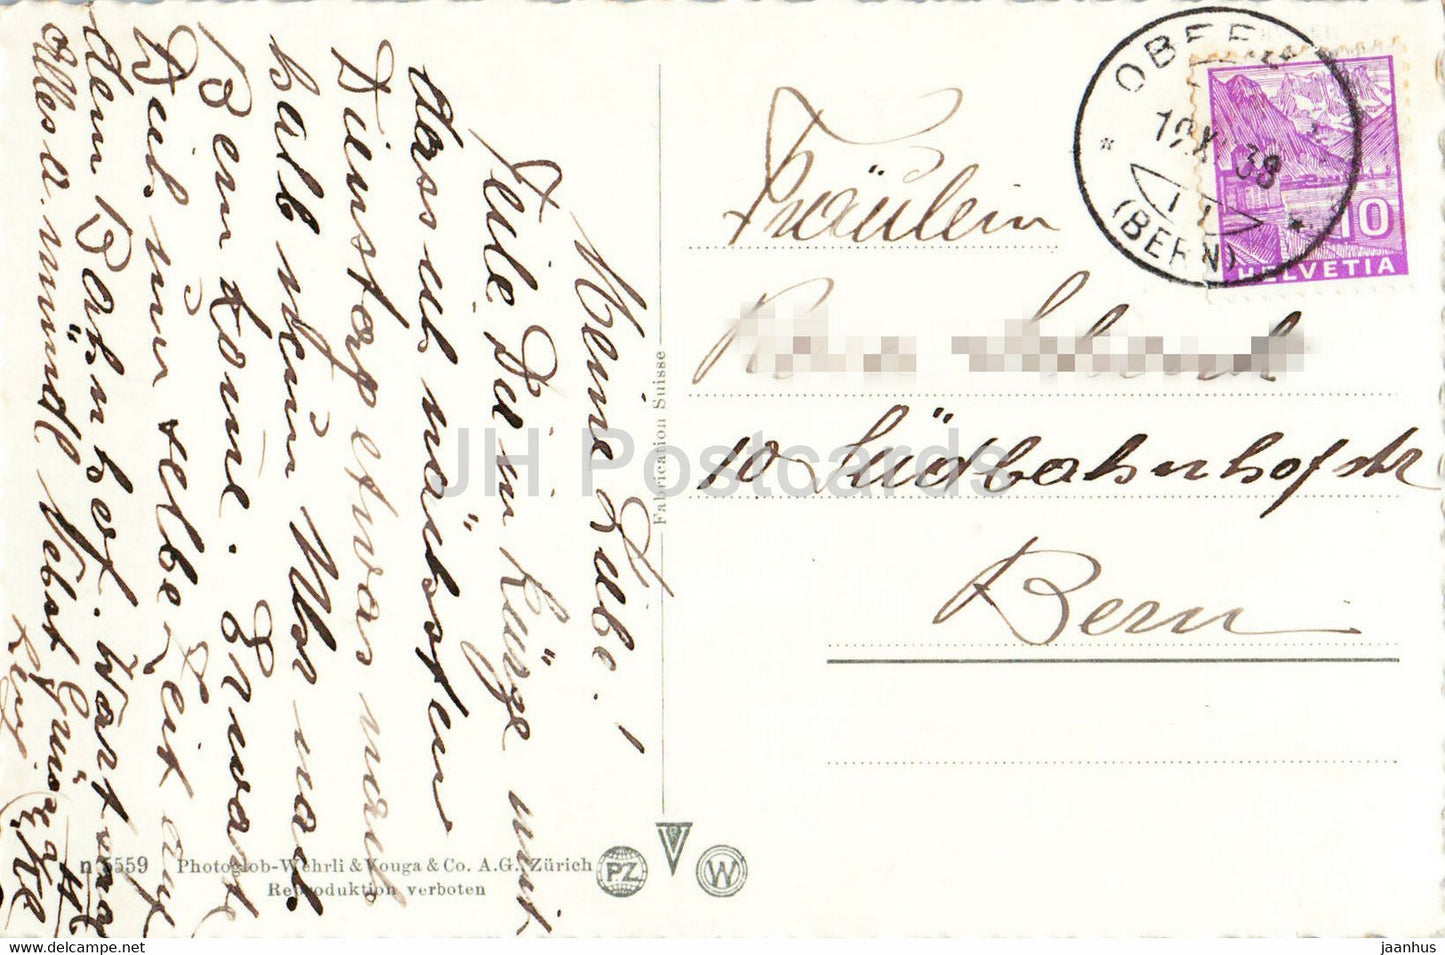 Zweisimmen 964 m - Wildstrubel 3253 m - 1938 - carte postale ancienne - Suisse - occasion